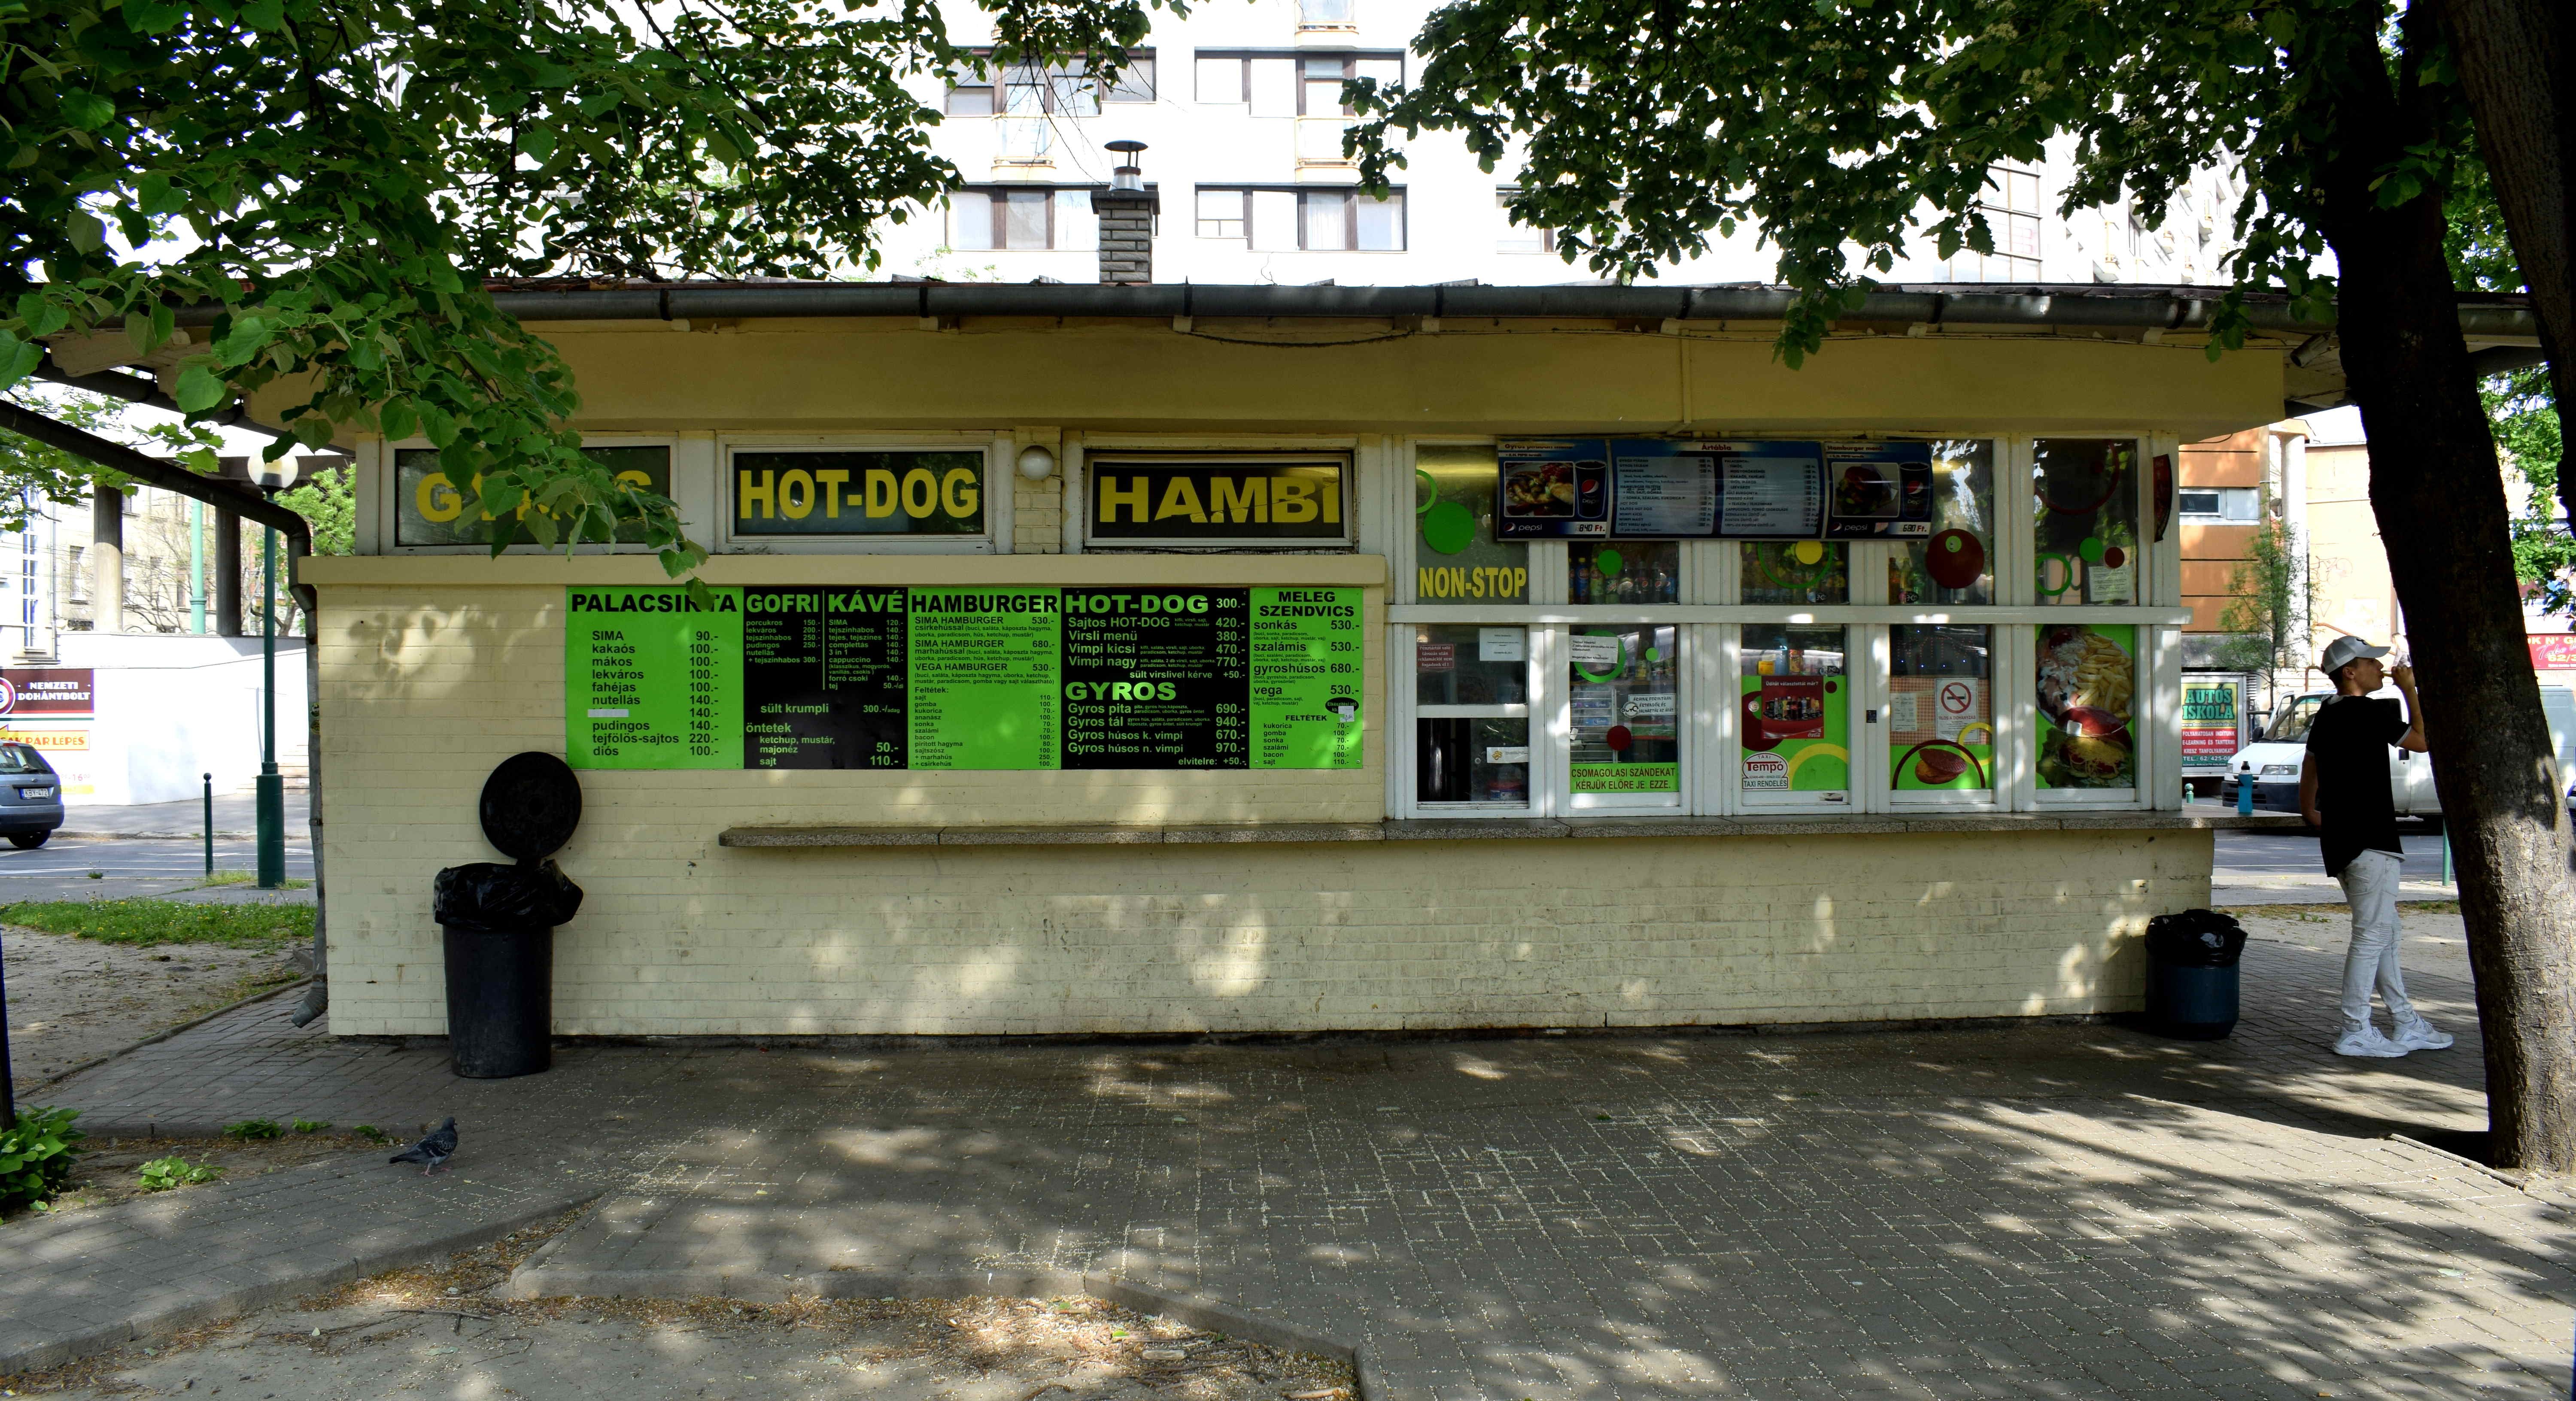 Szeged, Hungary Fast Food